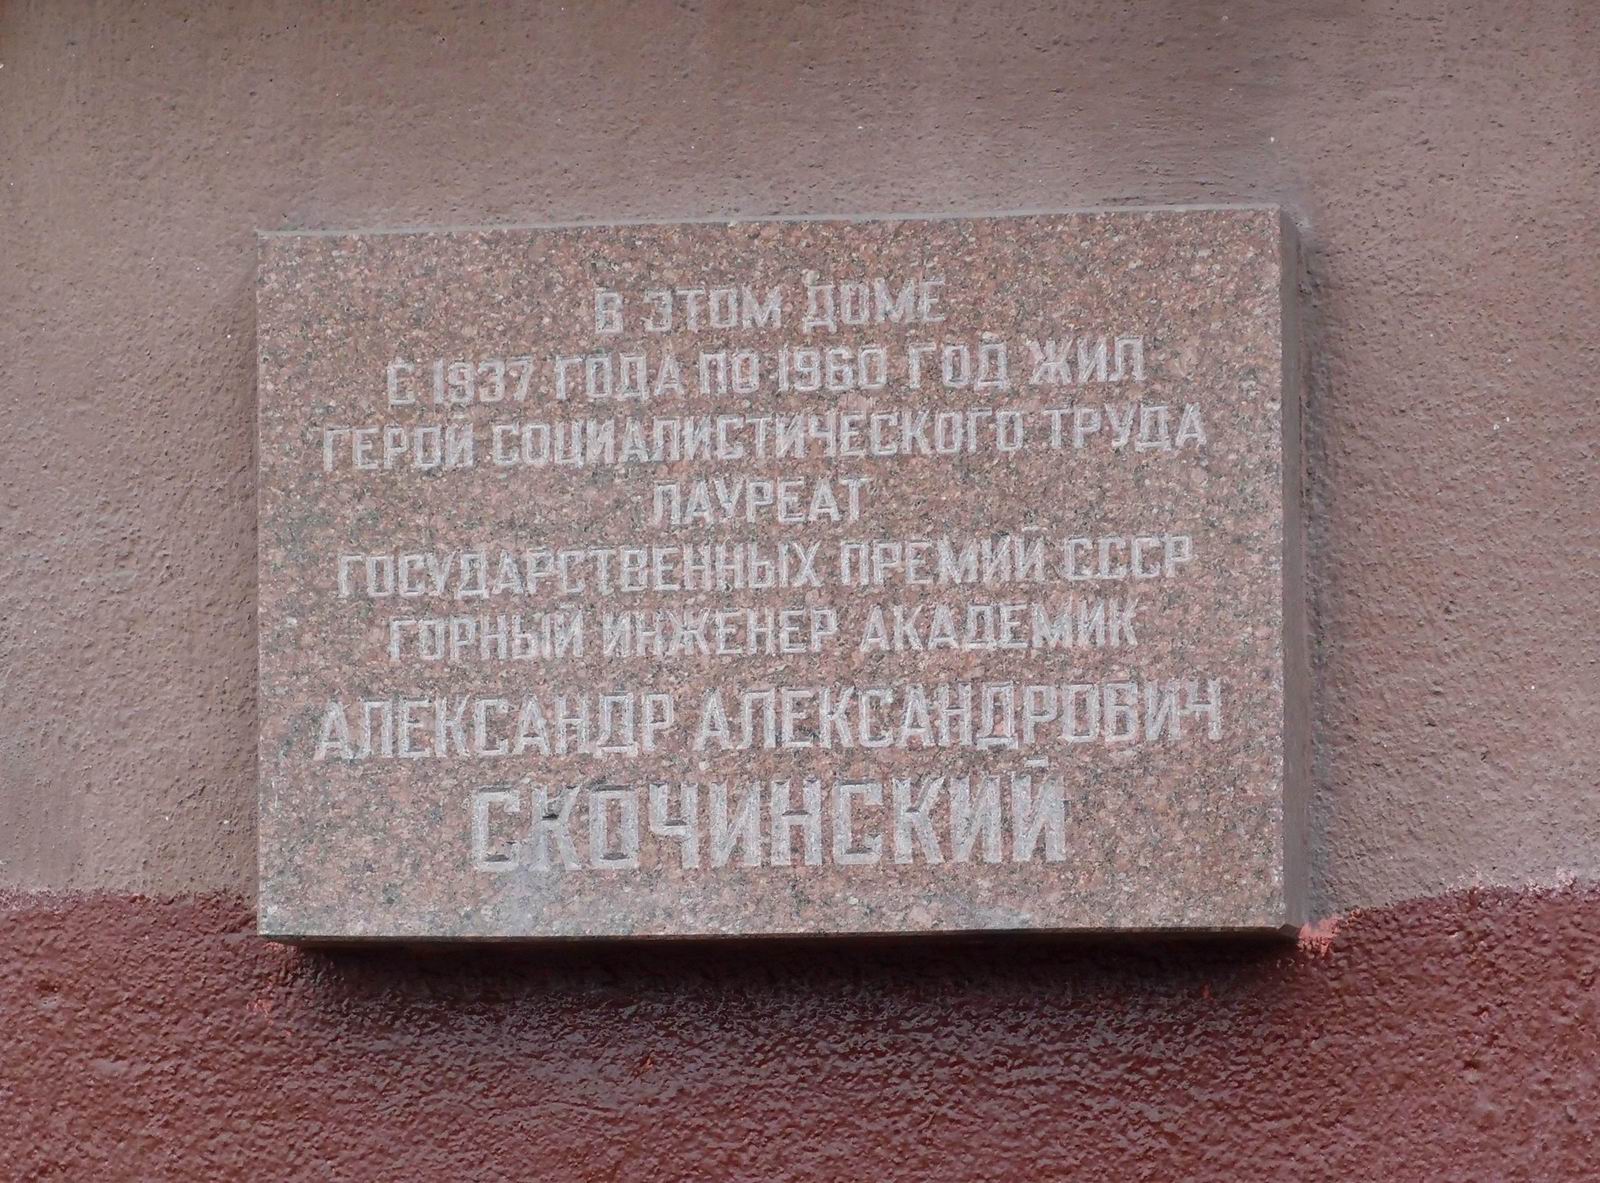 Мемориальная доска Скочинскому А.А. (1874–1960), арх. А.Ф.Маркин, на Крымском валу, дом 8, открыта 25.6.1982.